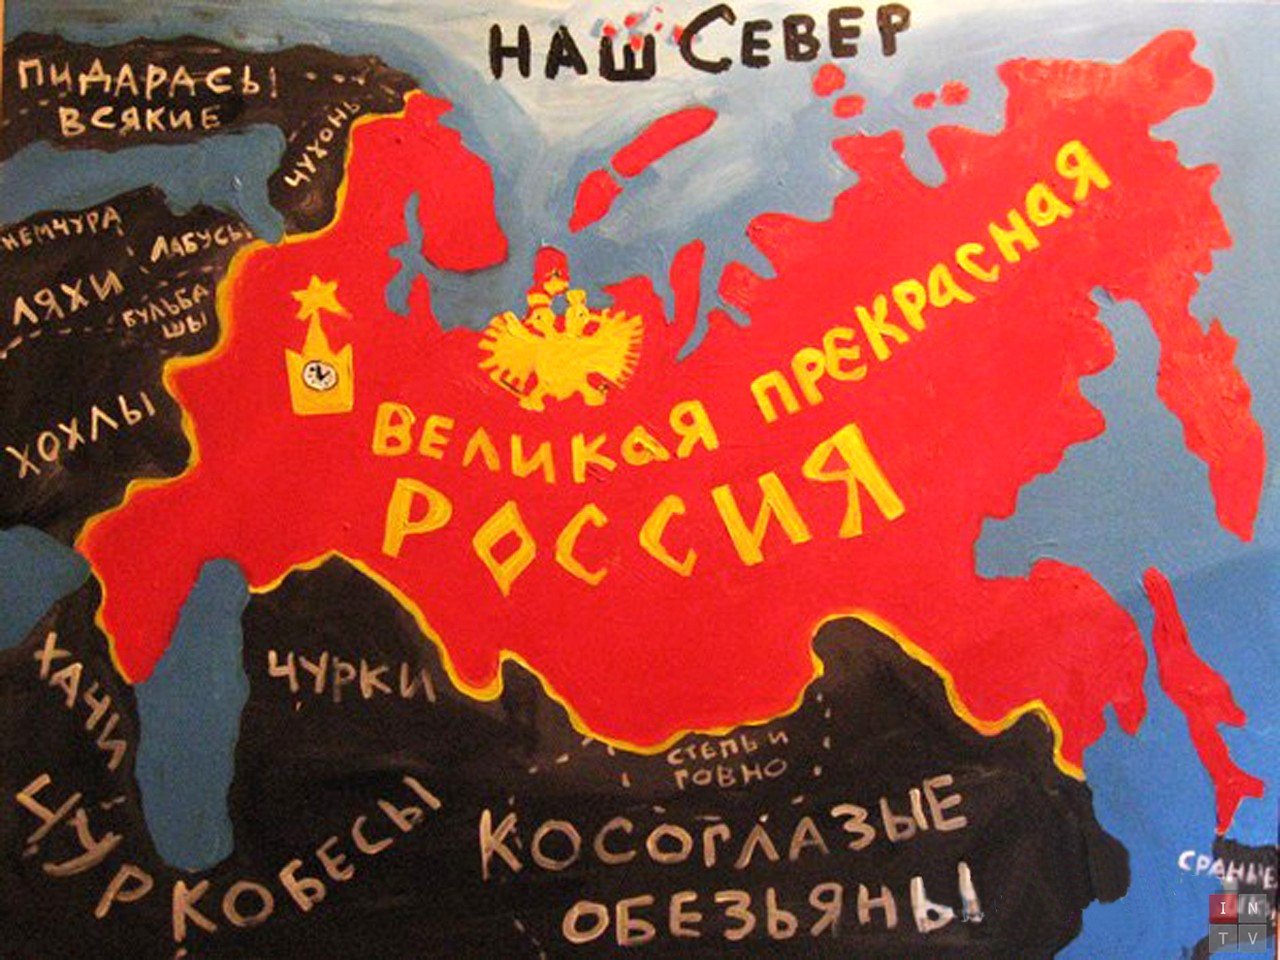 У "русского мира" есть 140-миллионный народ и 17 млн км² территории, где это сборище фашиствующих уродов может лелеять русскую культуру